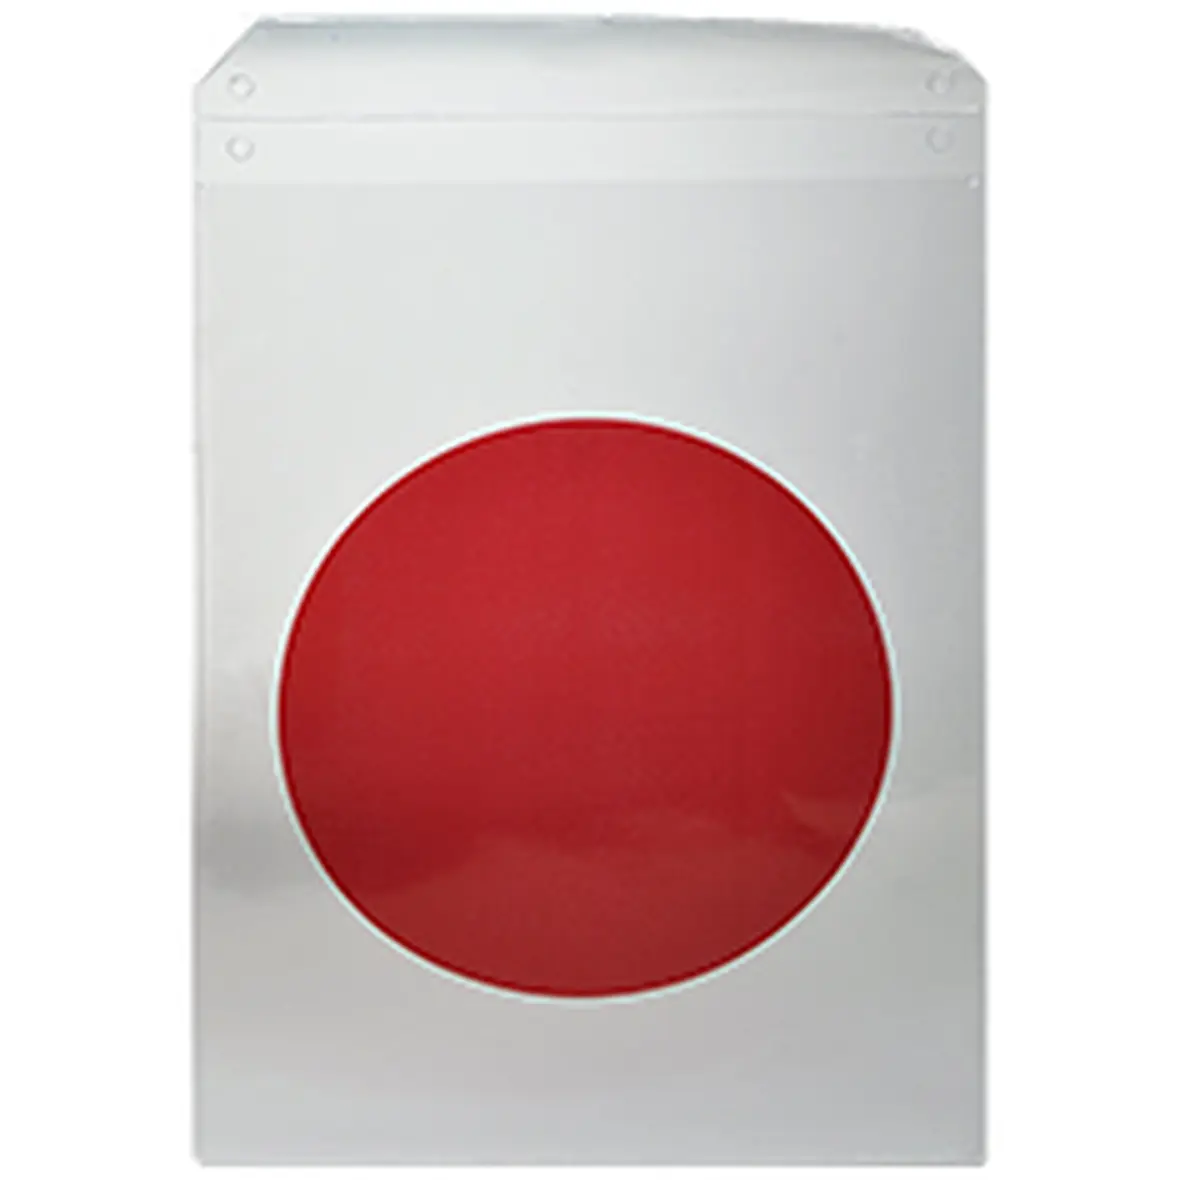 Formulare und Vordrucke Plastikhülle Roter Punkt, Schutzhülle für Bautafel, 220 x 320 mm, mit Lasche, 10 Stück für Bürobedarf